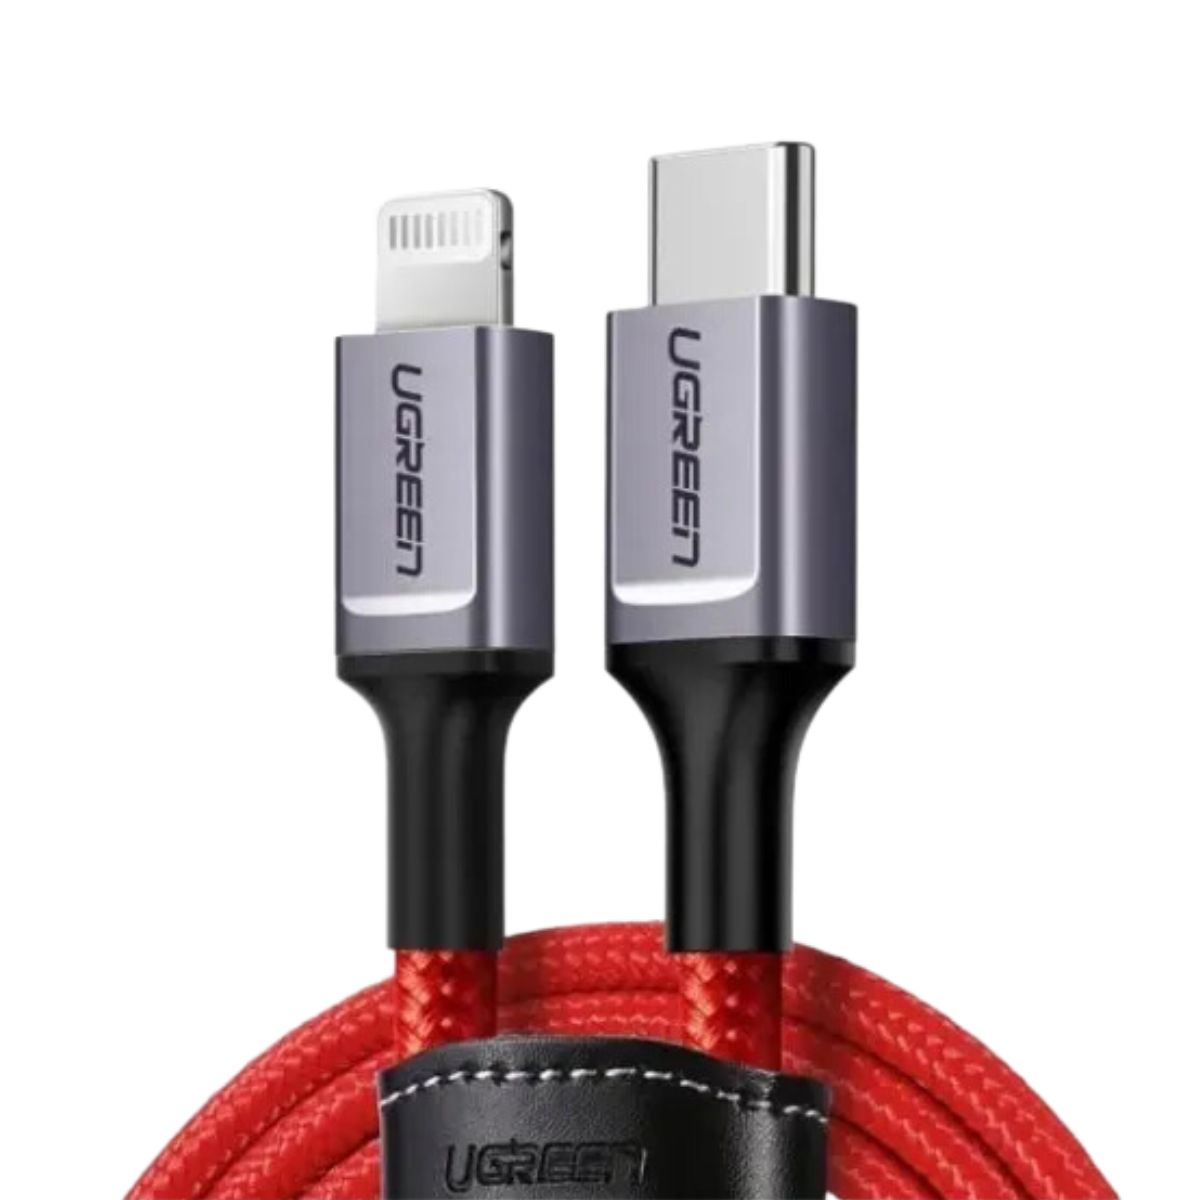 Cáp sạc nhanh USB-C sang Lightning Ugreen 20398 US298 dài 1m, màu đỏ, sạc nhanh PD 3A, tốc độ 480Mbps